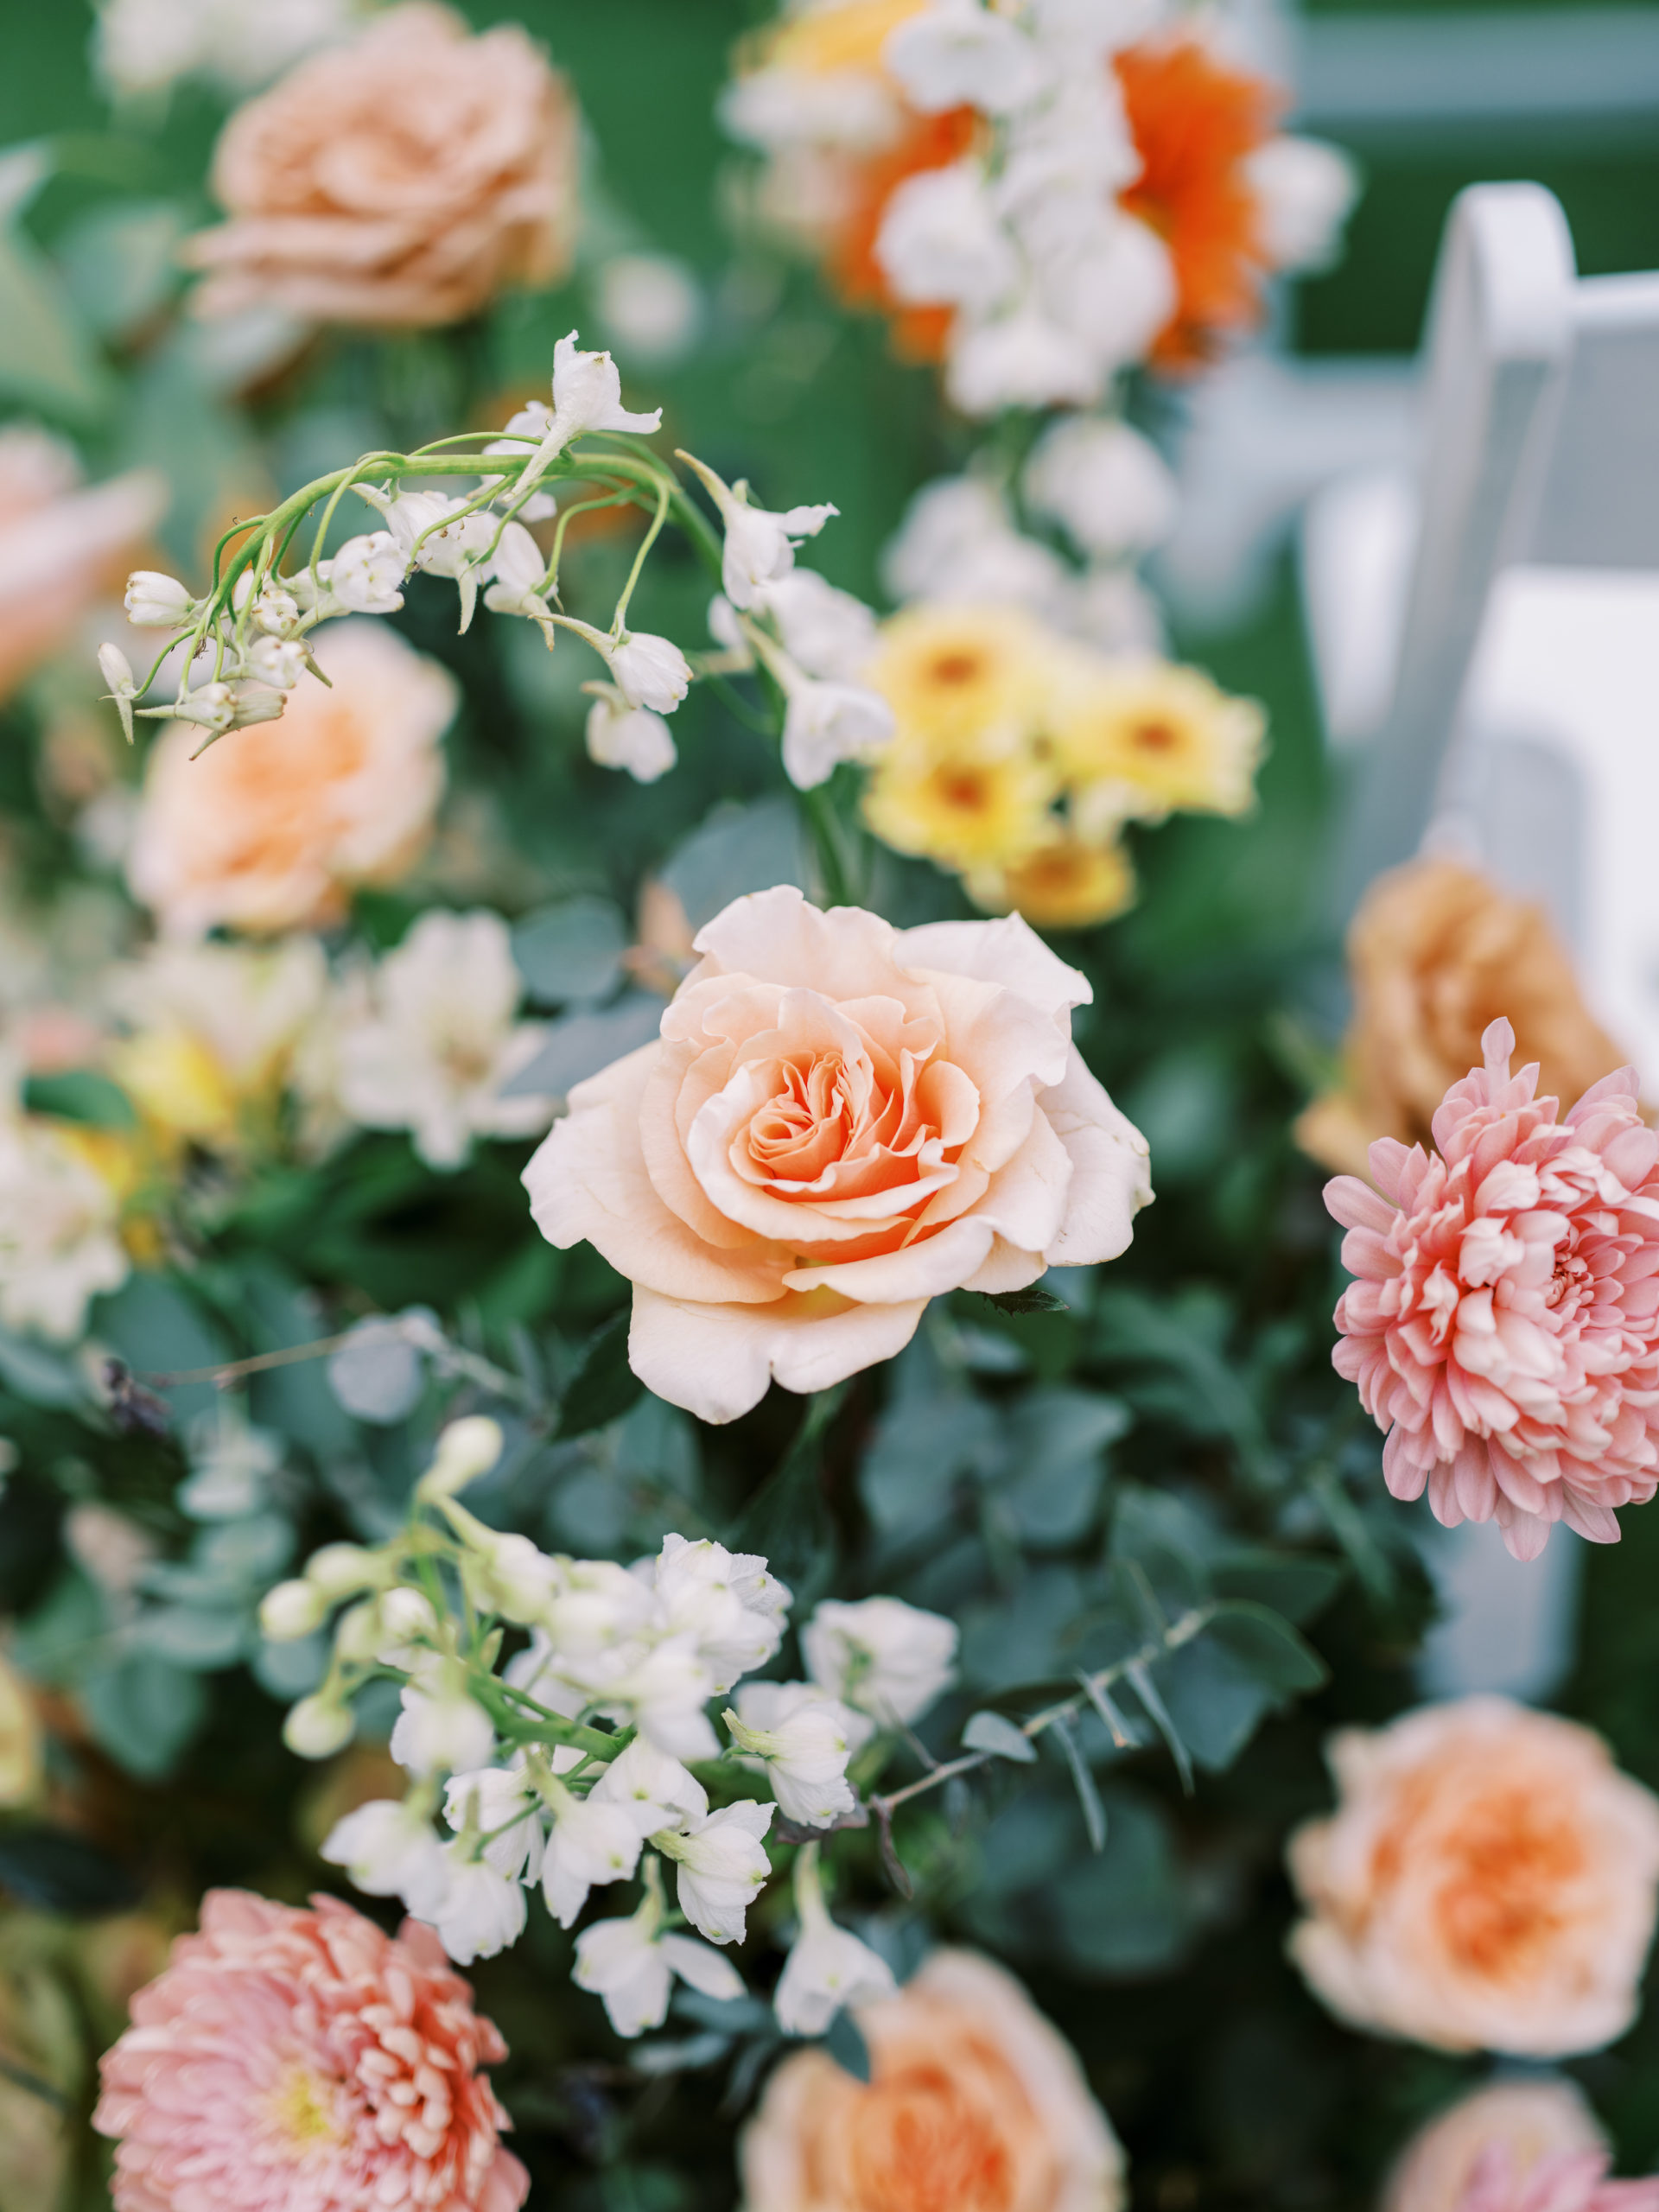 San Diego wedding flowers by Tularosa